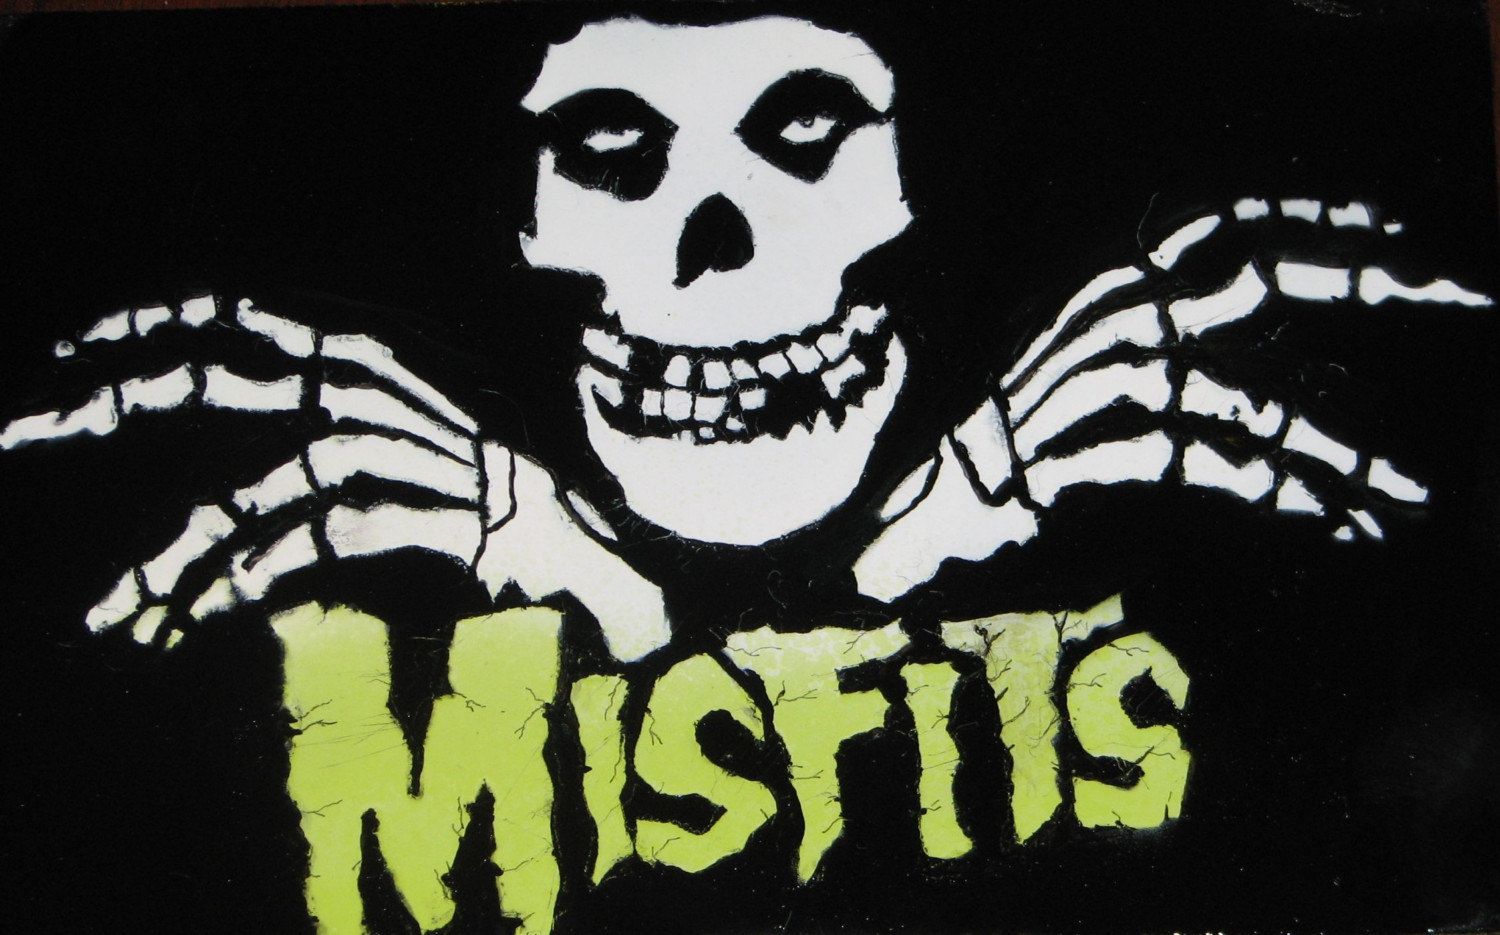 Misfits Skull Wallpapers on WallpaperDog